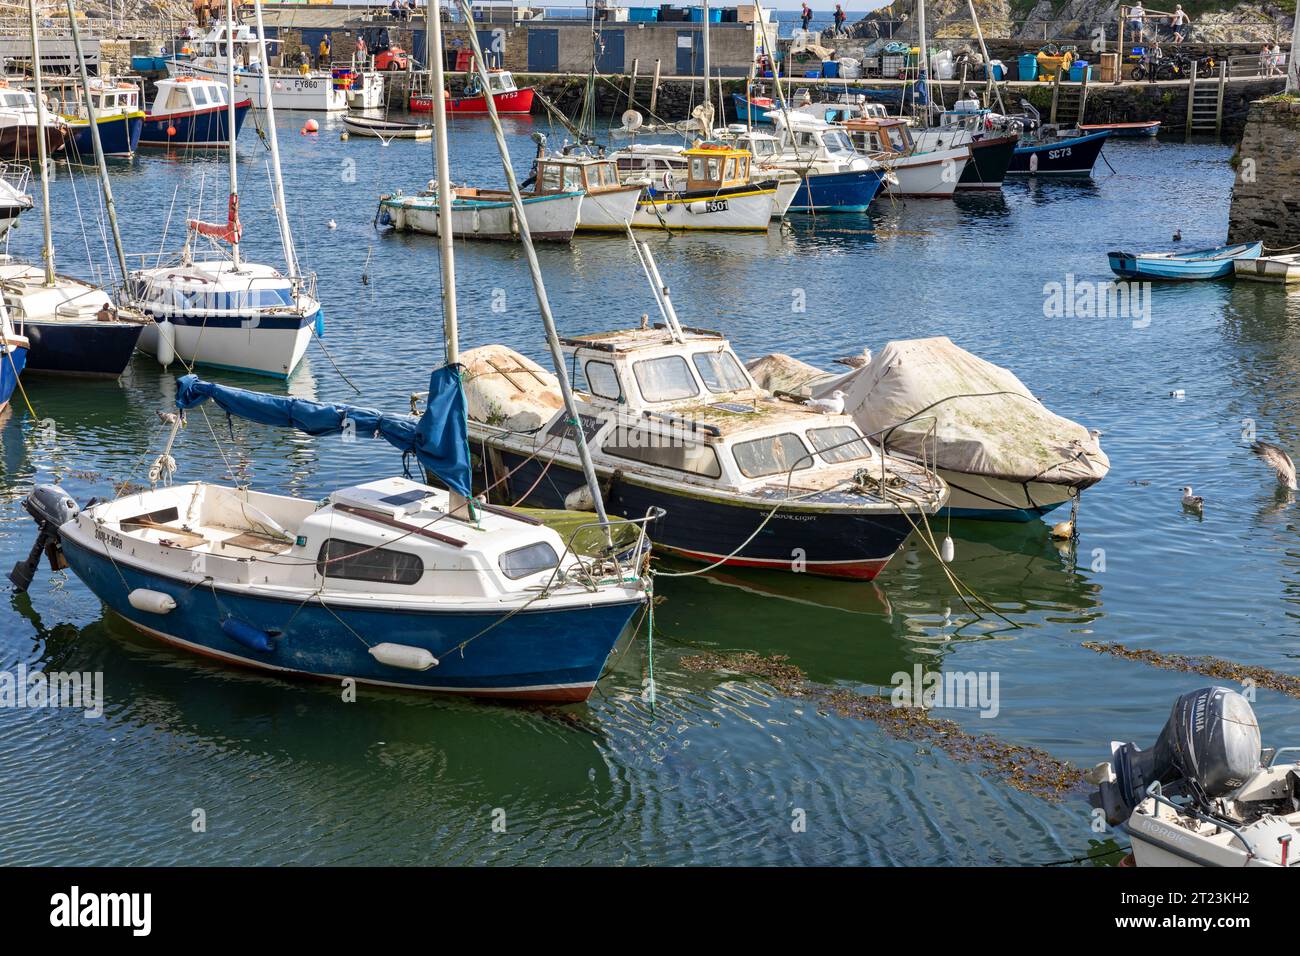 Villaggio di pescatori di Polperro sulla costa meridionale della Cornovaglia, piccole barche da pesca ormeggiate nel porto, Inghilterra, Regno Unito, 2023 Foto Stock